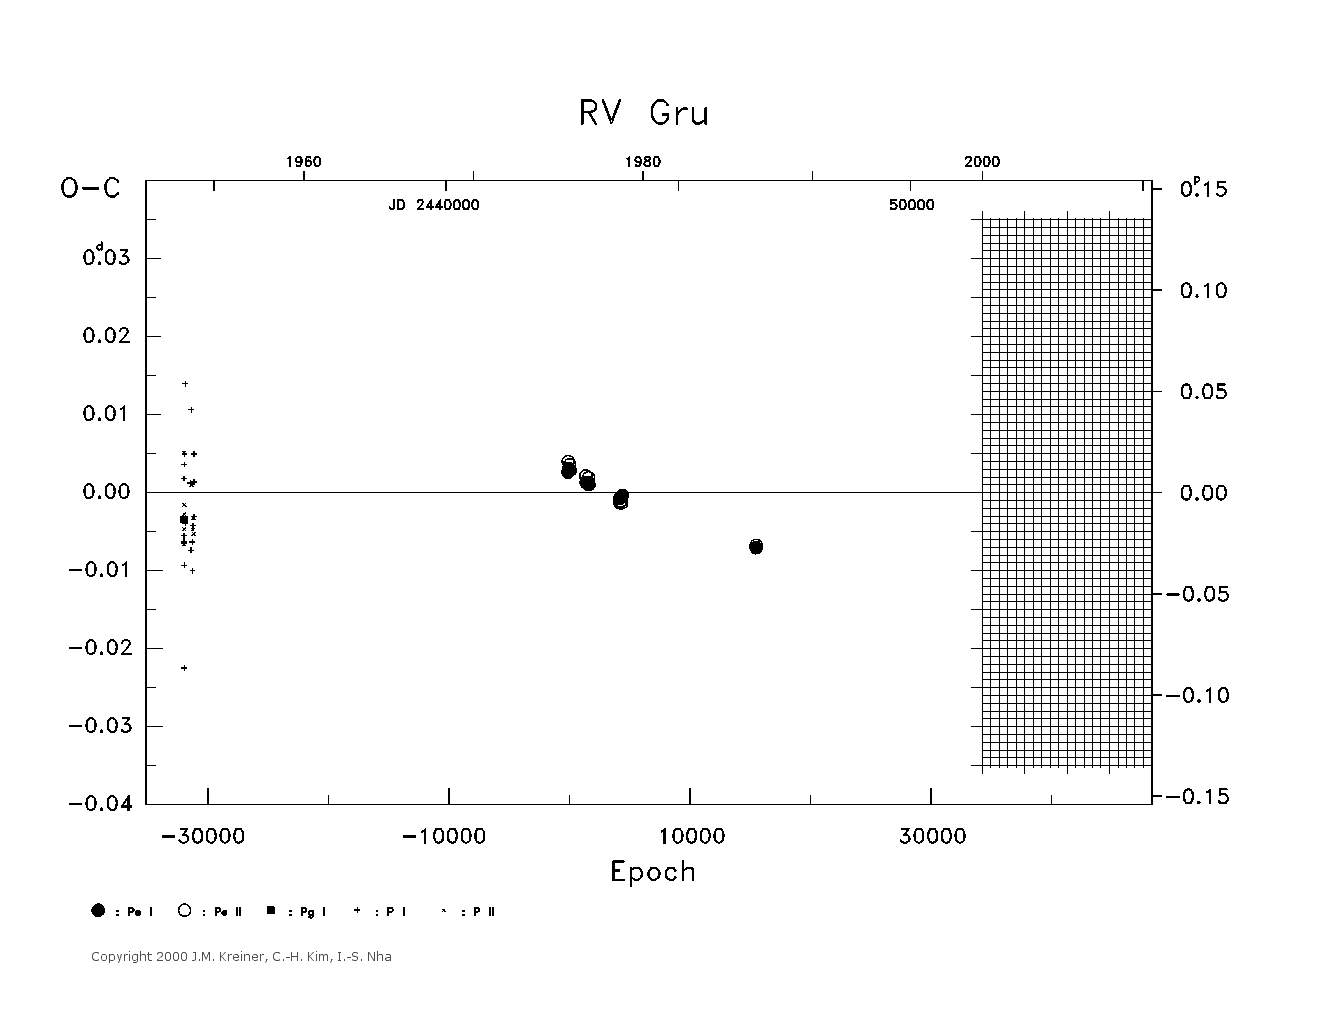 [IMAGE: large RV GRU O-C diagram]